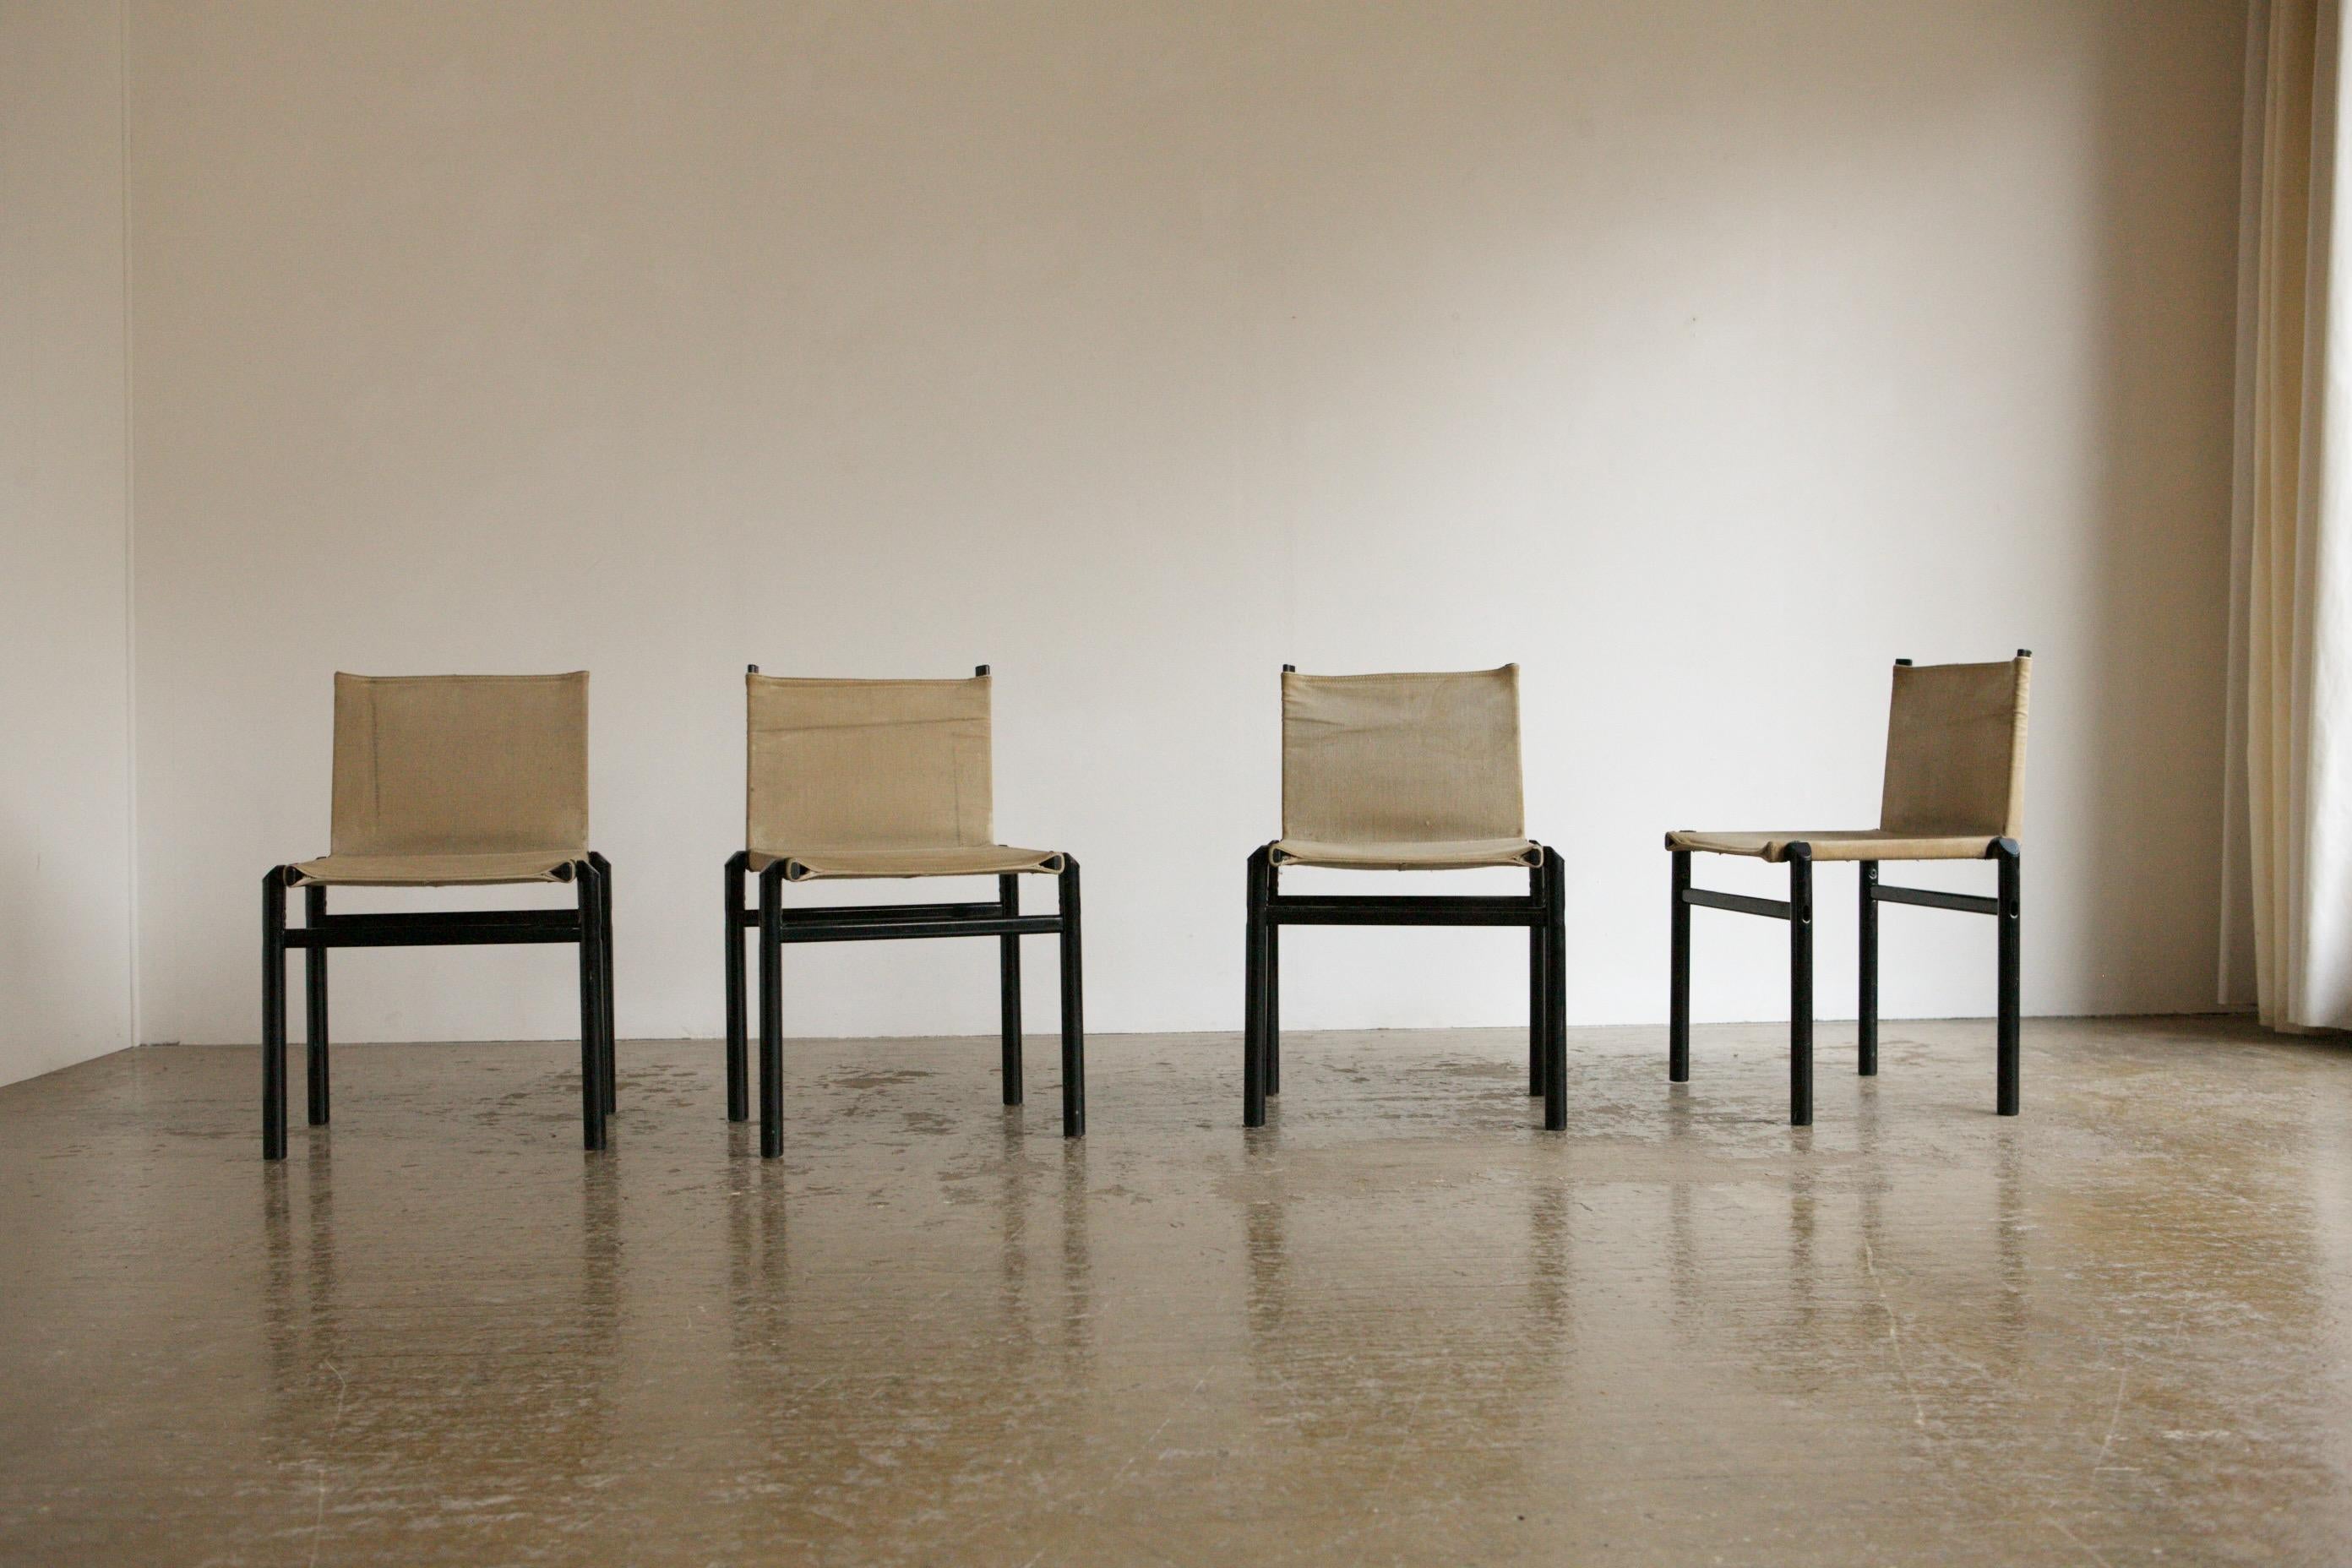 Nous adorons cet ensemble de chaises neutres en acier et en toile réalisées par les géants du design italien des années 1970, Afra et Tobia Scarpa. Les chaises Steele ont un cadre en acier noir clair et elles sont tapissées de leur toile naturelle